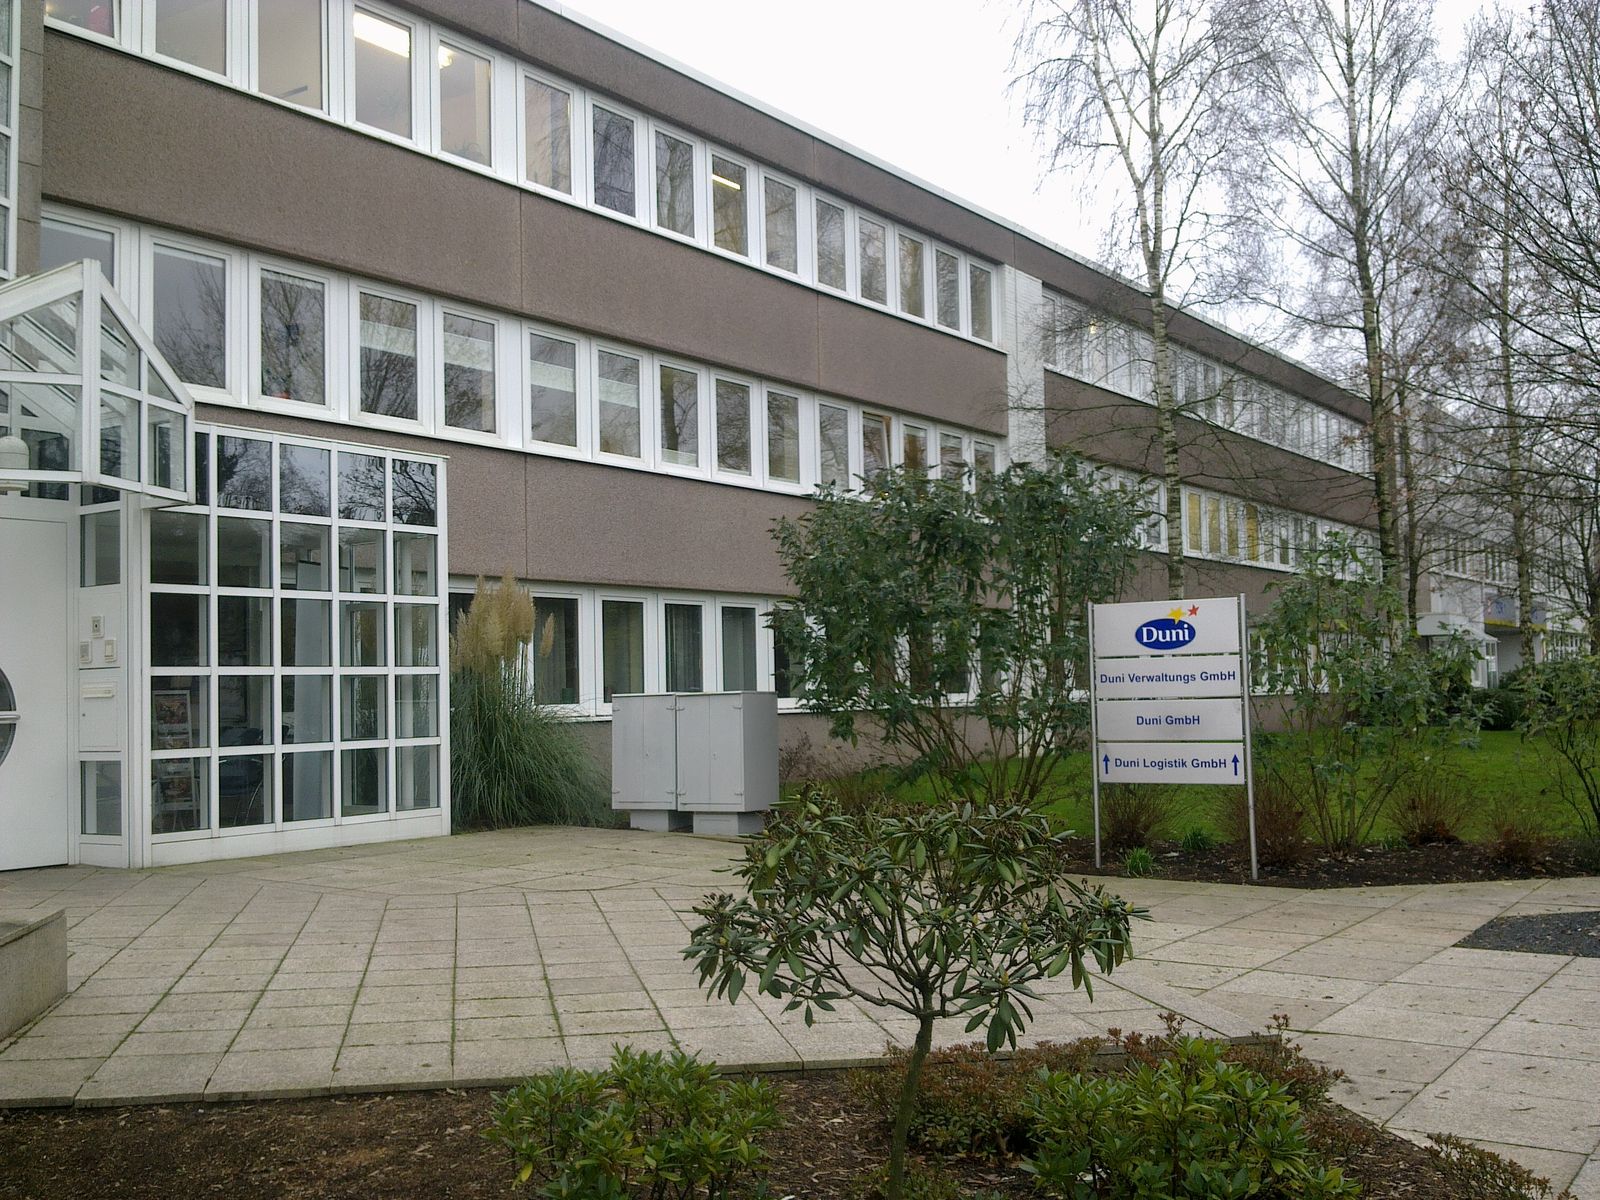 Duni GmbH in Bramsche ⇒ in Das Örtliche